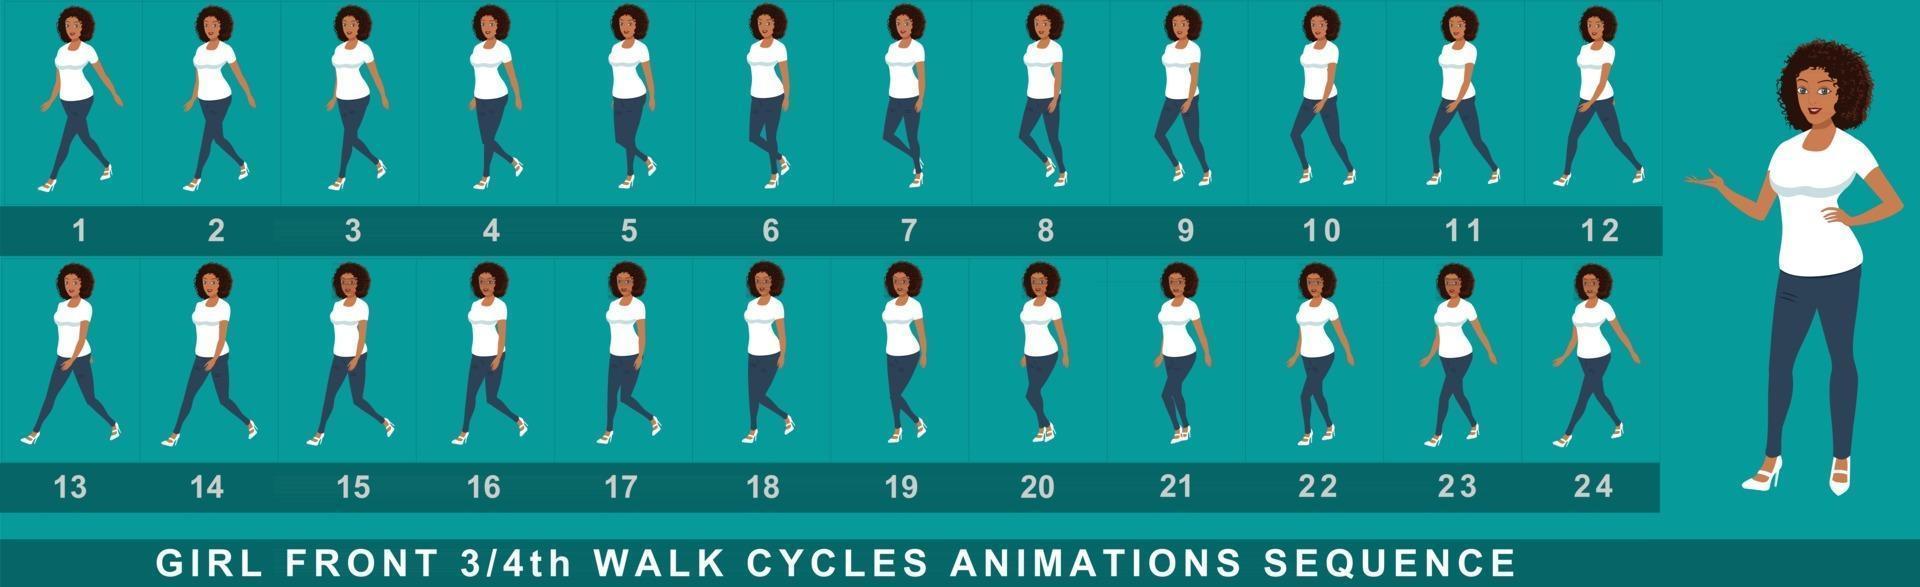 sequenza di animazione del ciclo di camminata del personaggio della ragazza vettore